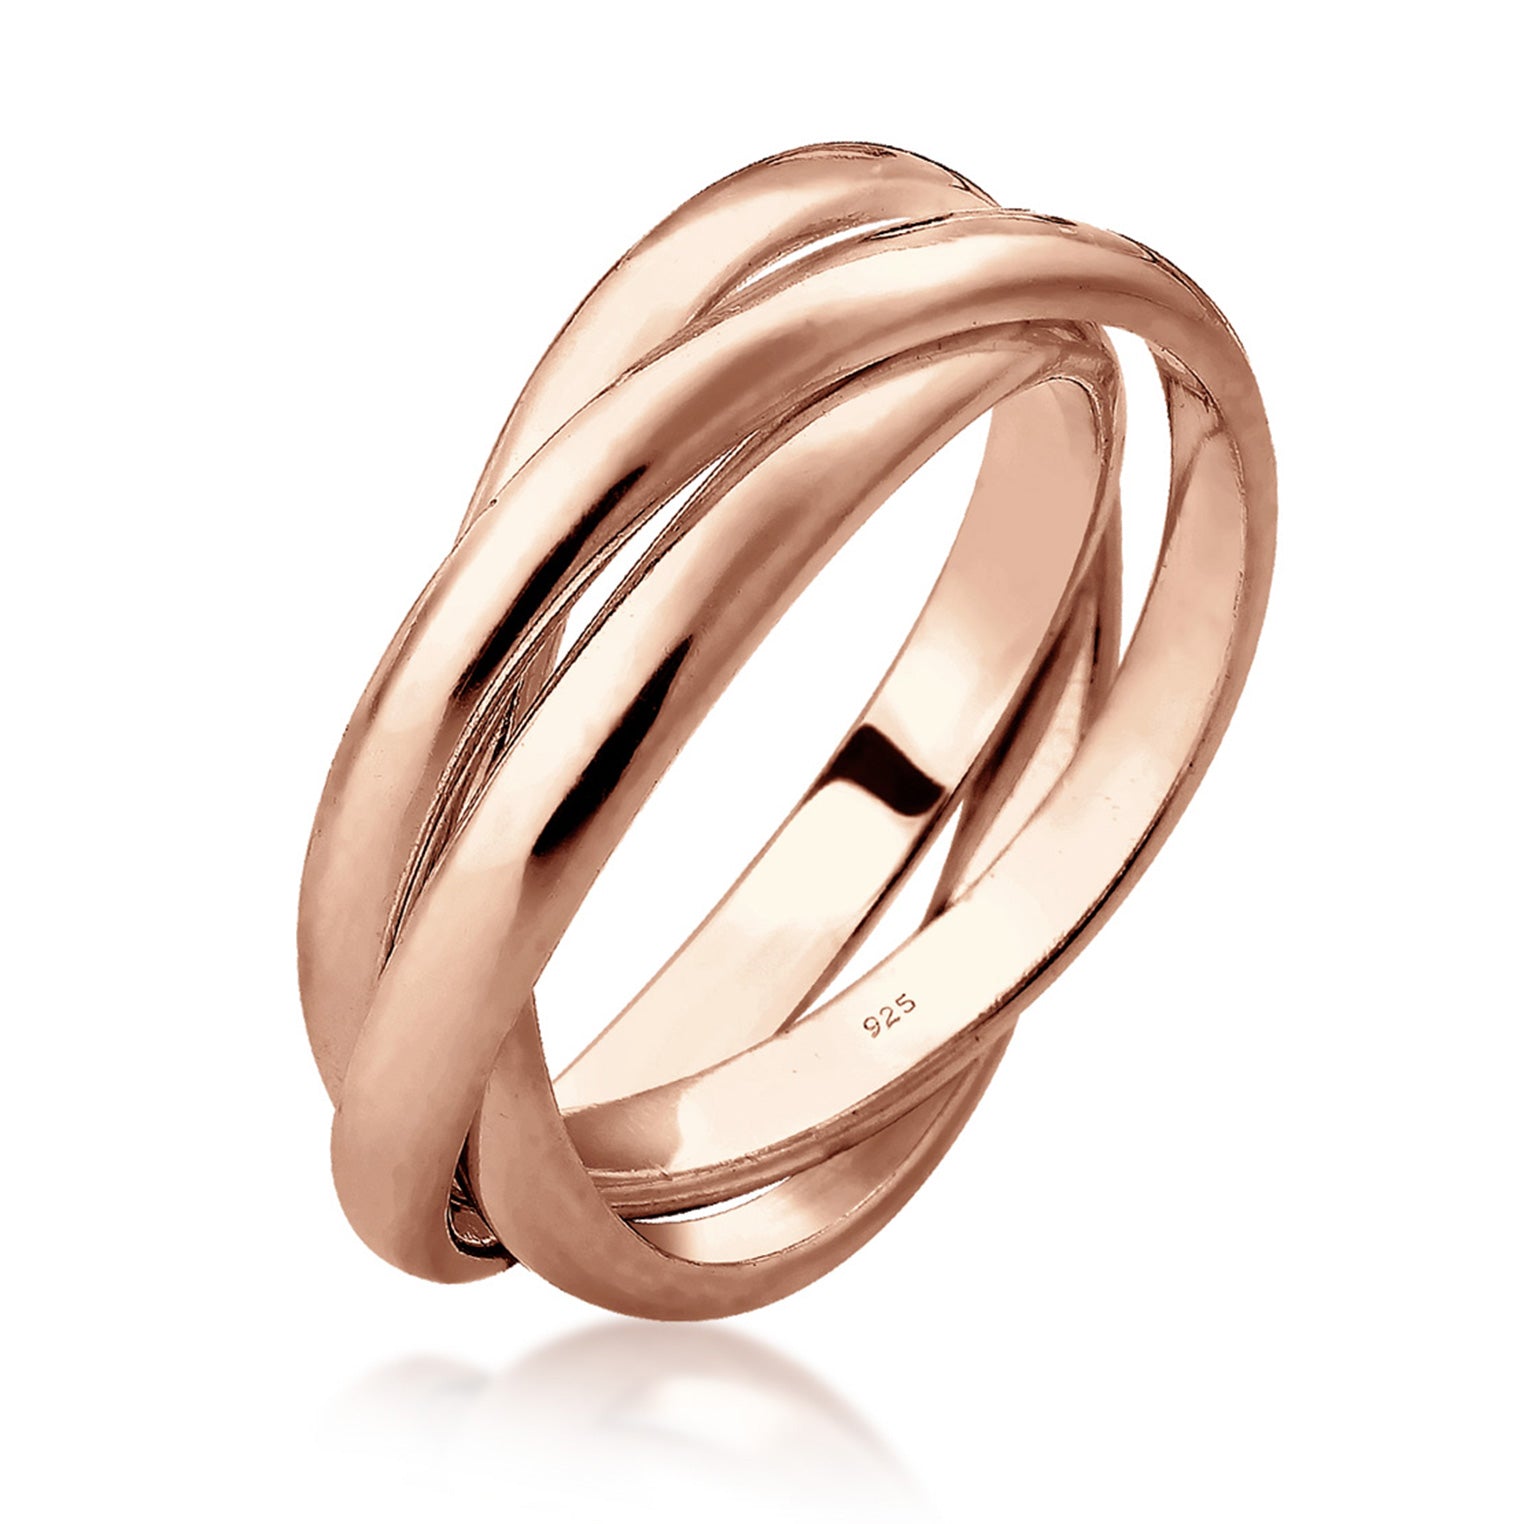 Ringe aus Silber kaufen Gold oder bei Auswahl – Jewelry | Elli TOP | Elli